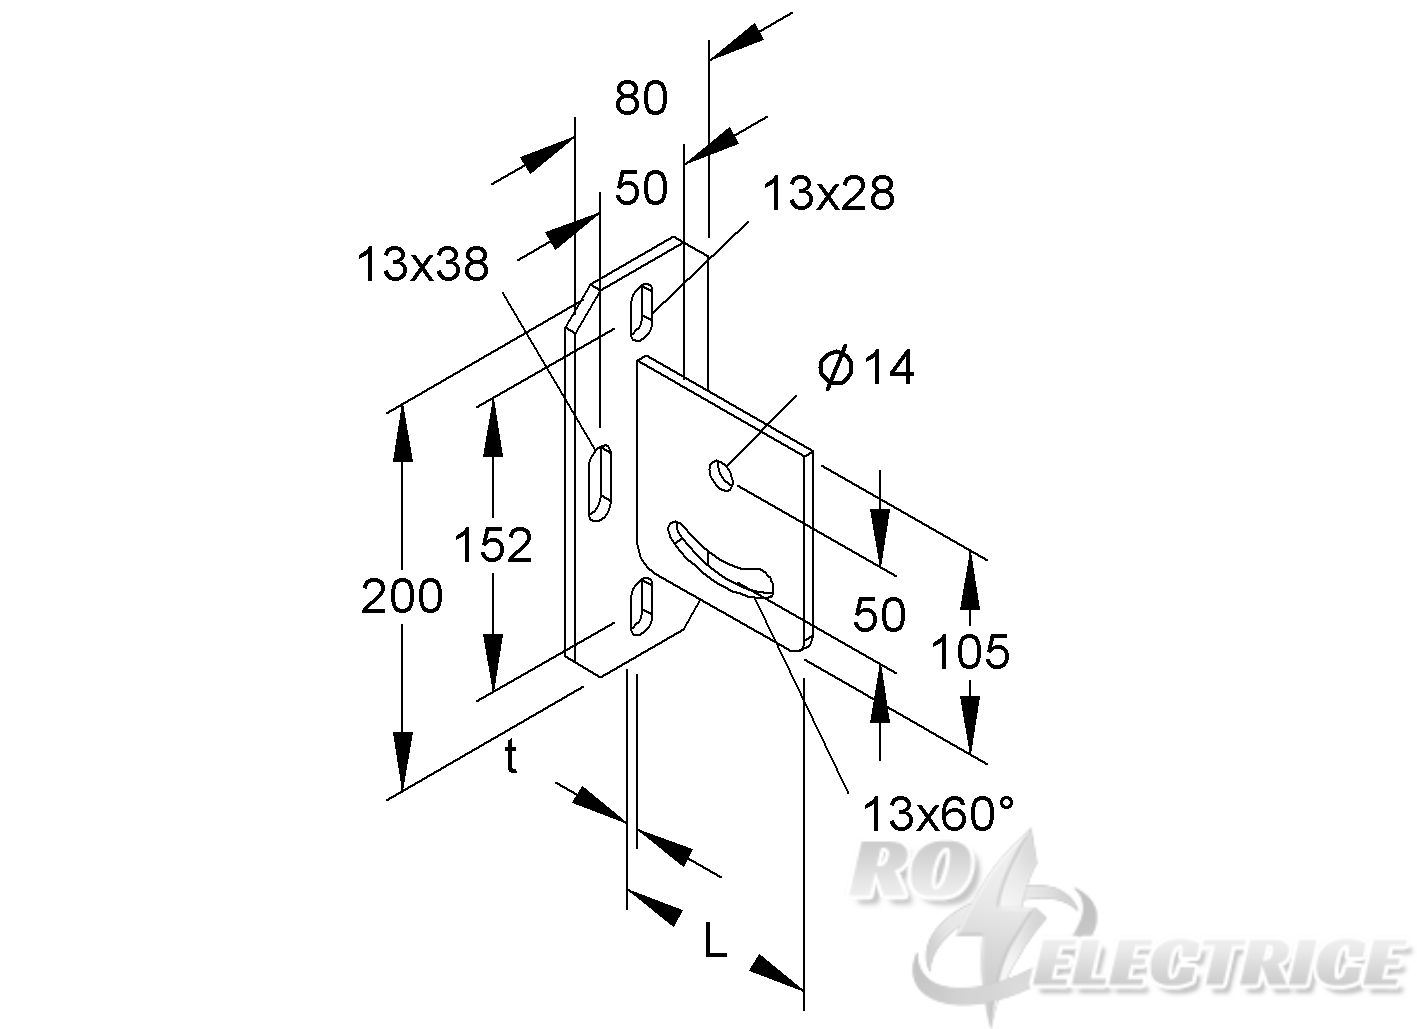 Schraubkopfplatte für Profil U 50, horizontal, verstellbar, Stahl, feuerverzinkt DIN EN ISO 1461, inkl. Zubehör